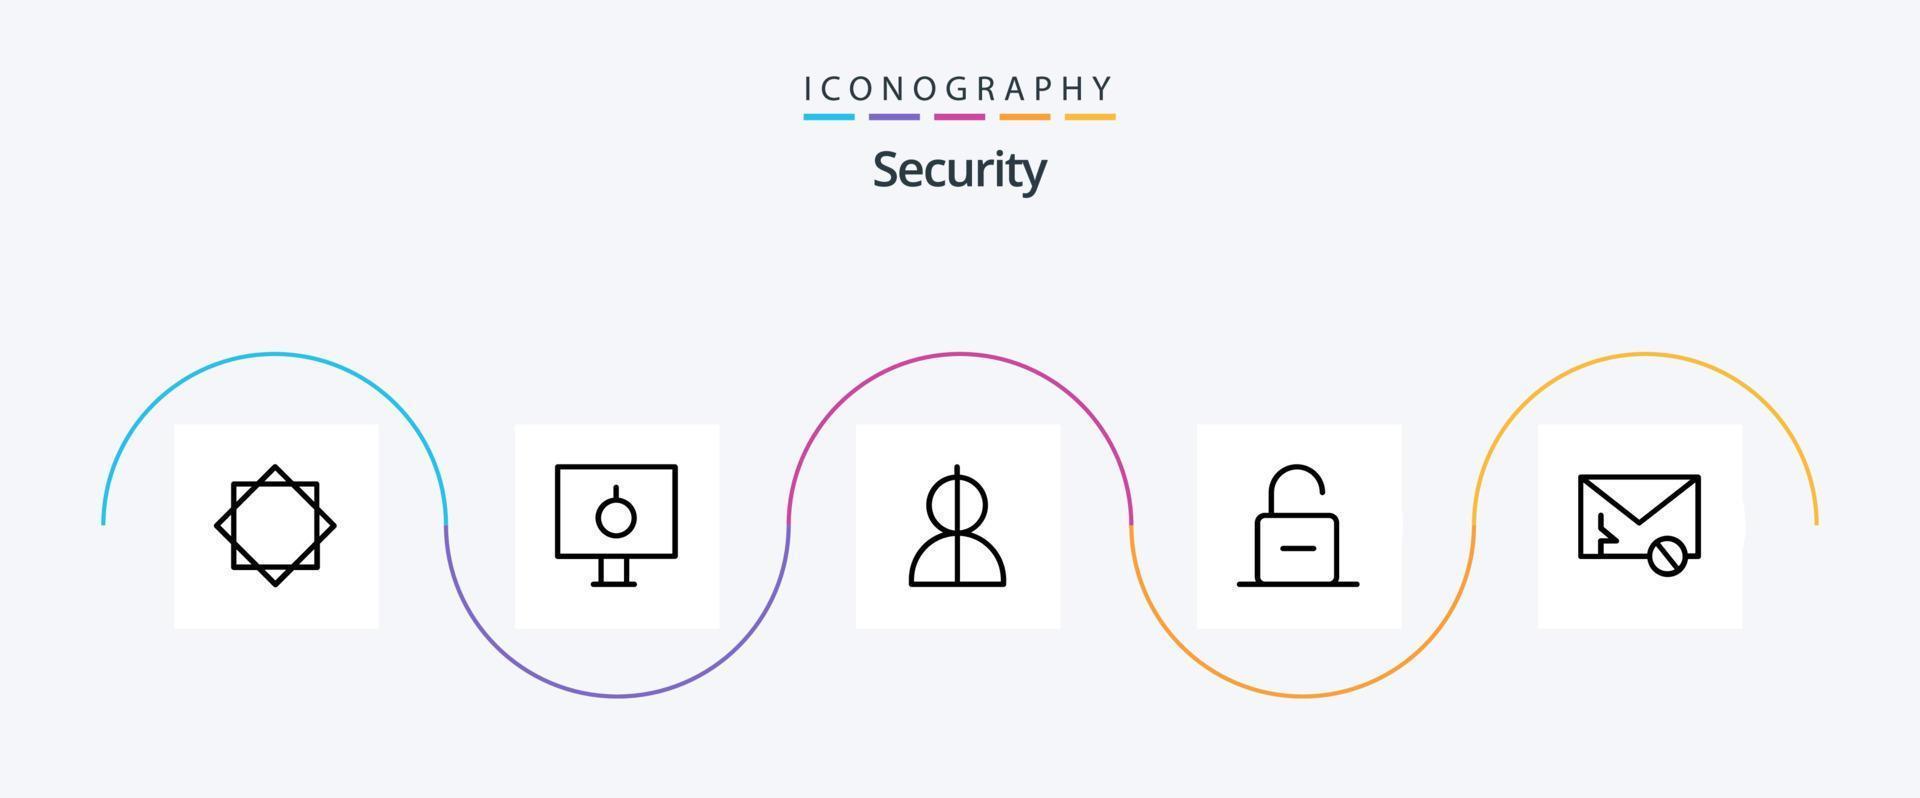 Sécurité ligne 5 icône pack comprenant sécurité. cadenas. sécurité. serrure. profil vecteur